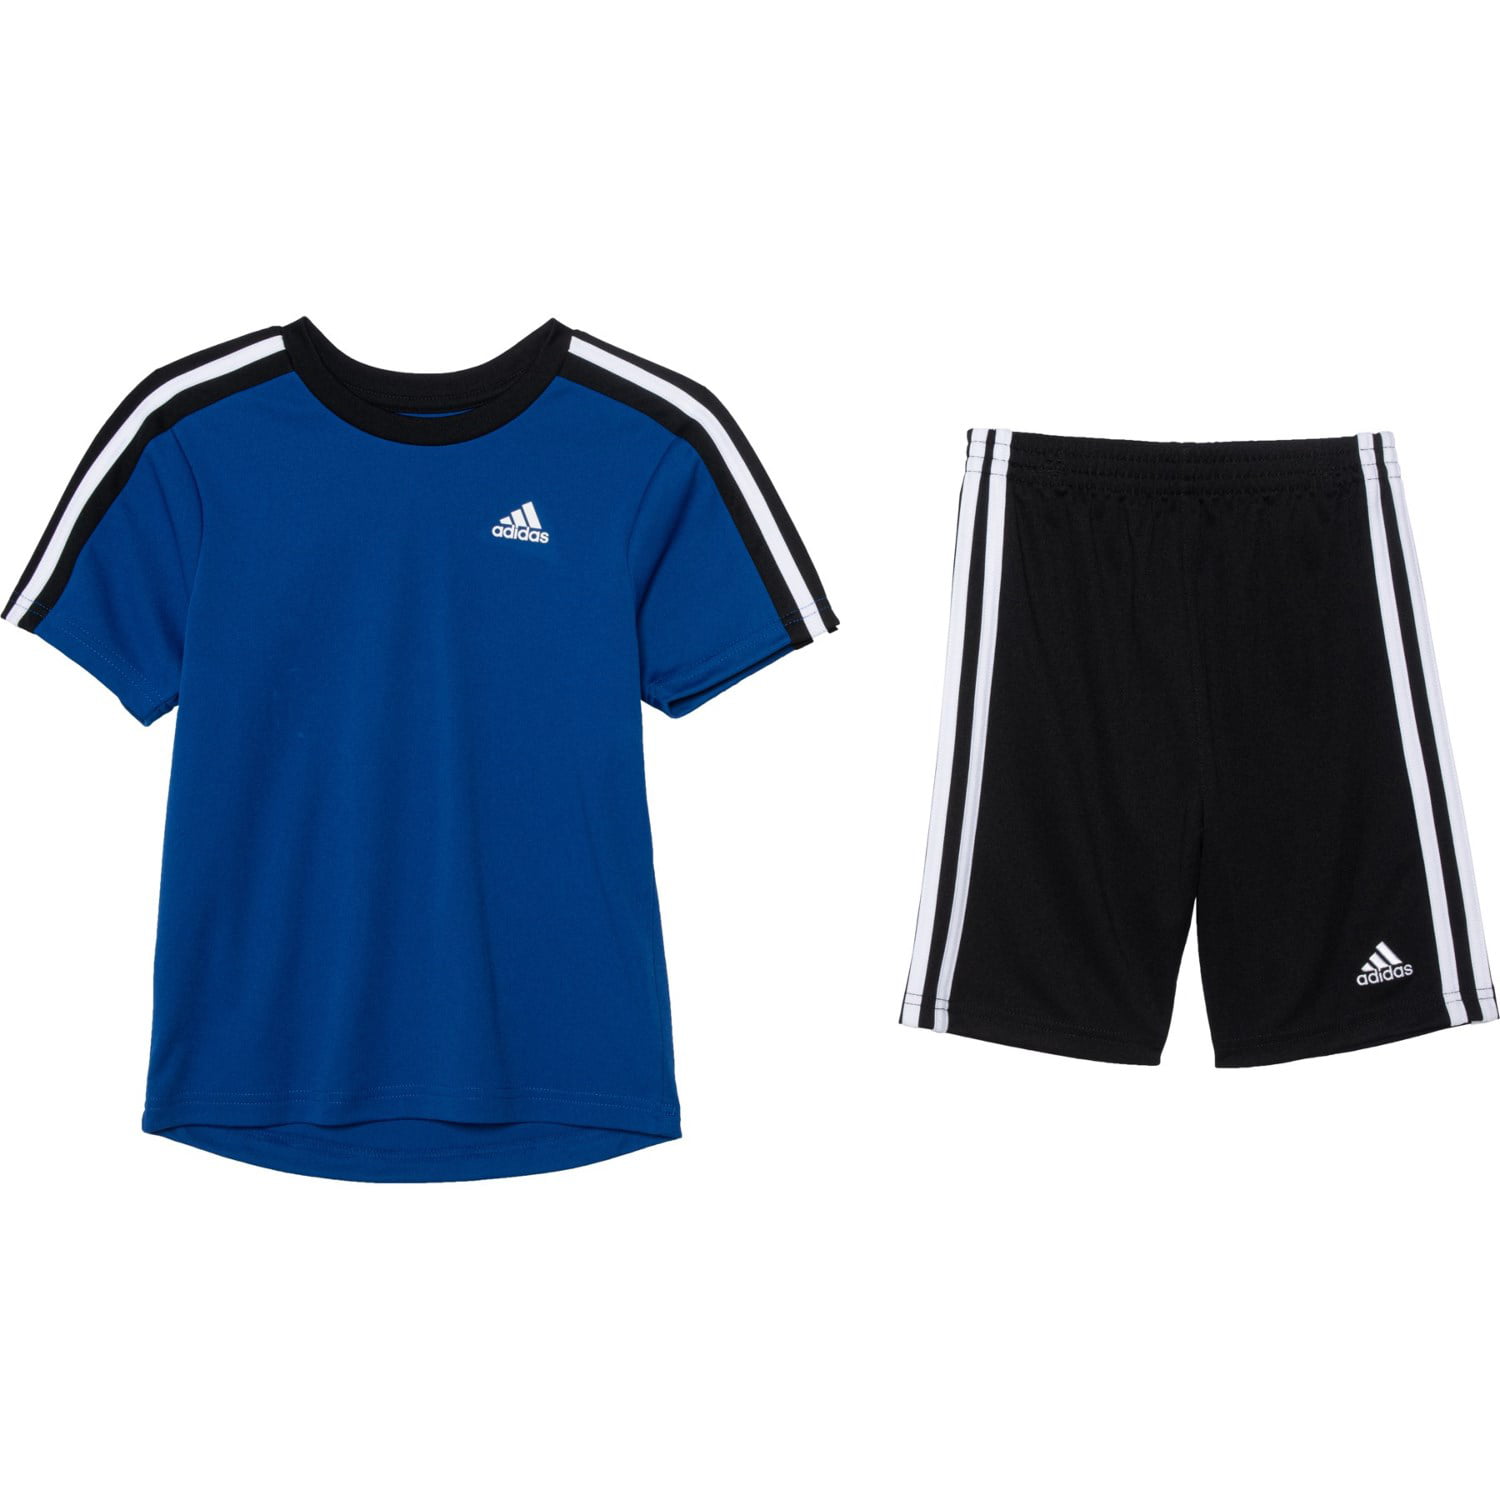 Adidas - Adidas Boys' T-Shirt and Short 